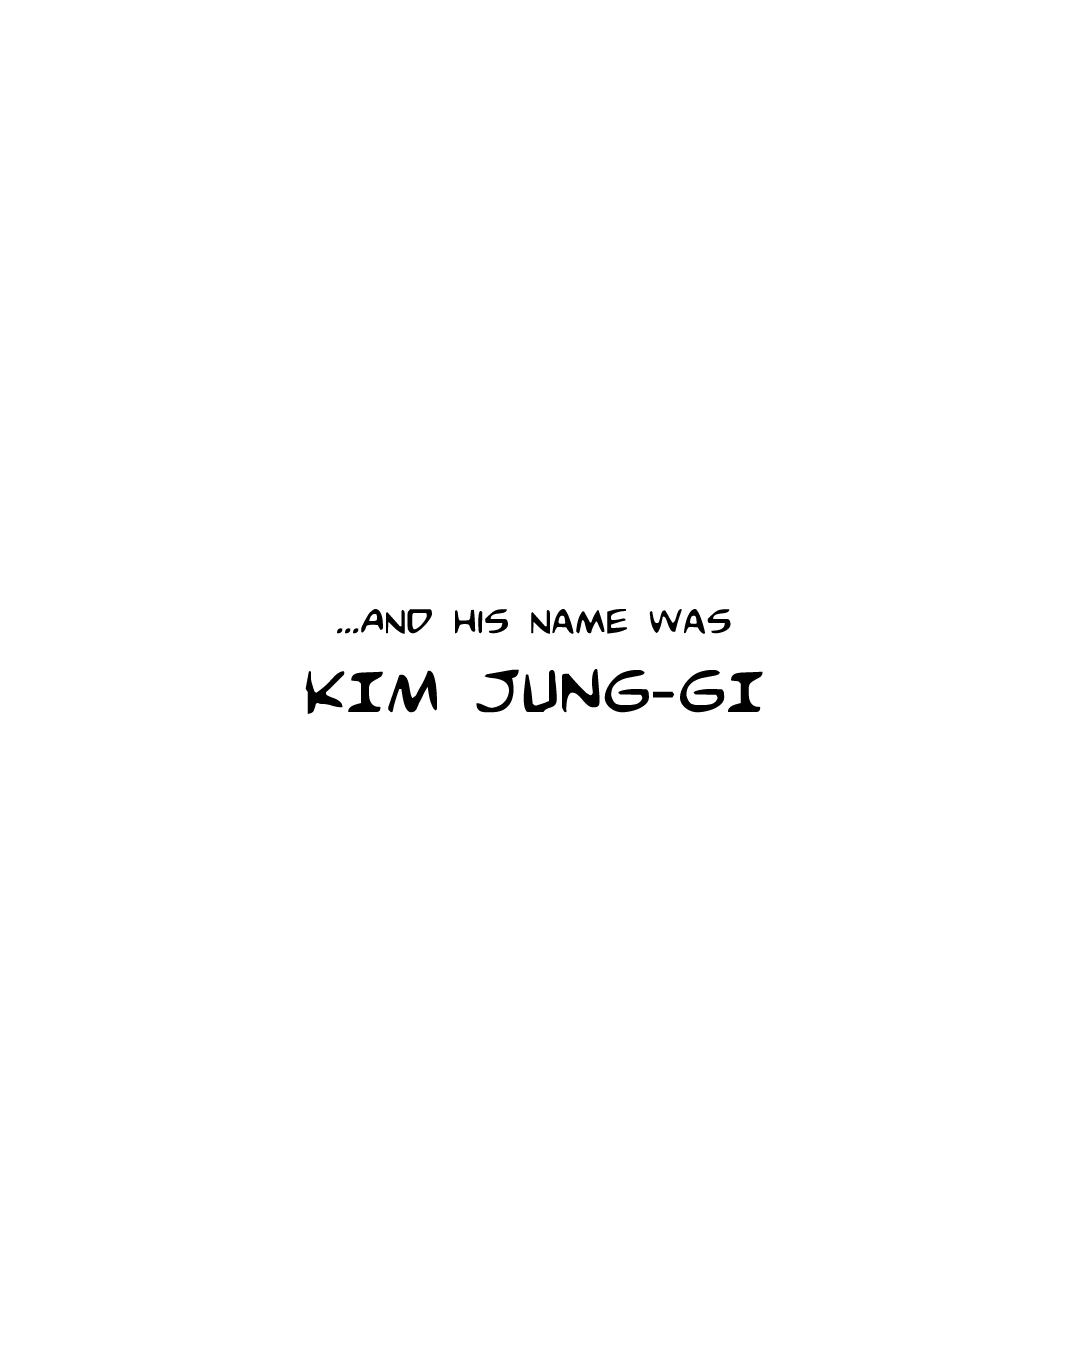 His name was Kim Jung-gi.